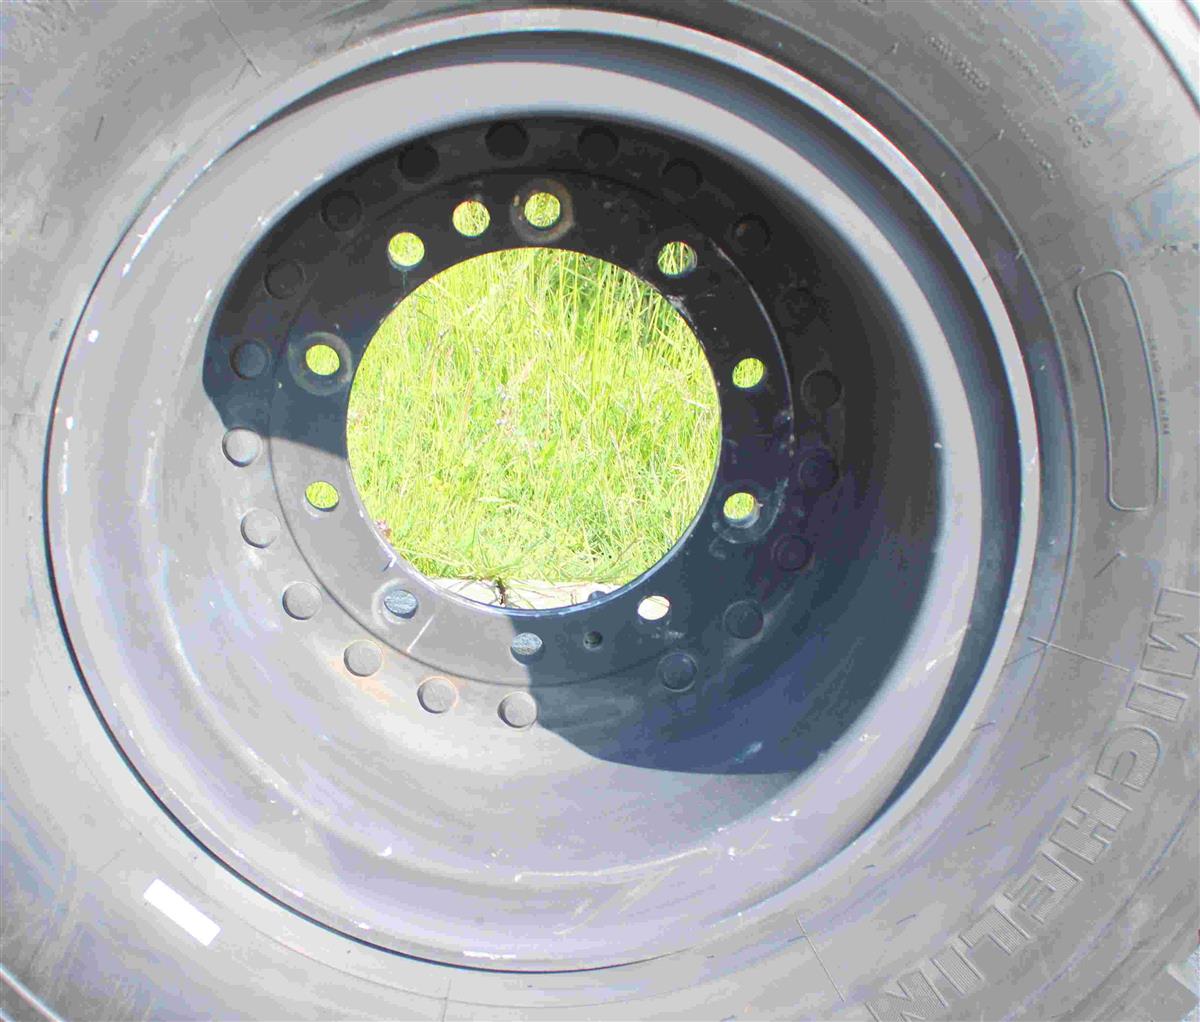 TI-1846 | TI-1846 Michelin 39585R20 XZL Tire Mounted on Hutchinson Aluminum Rim  (4a).jpg